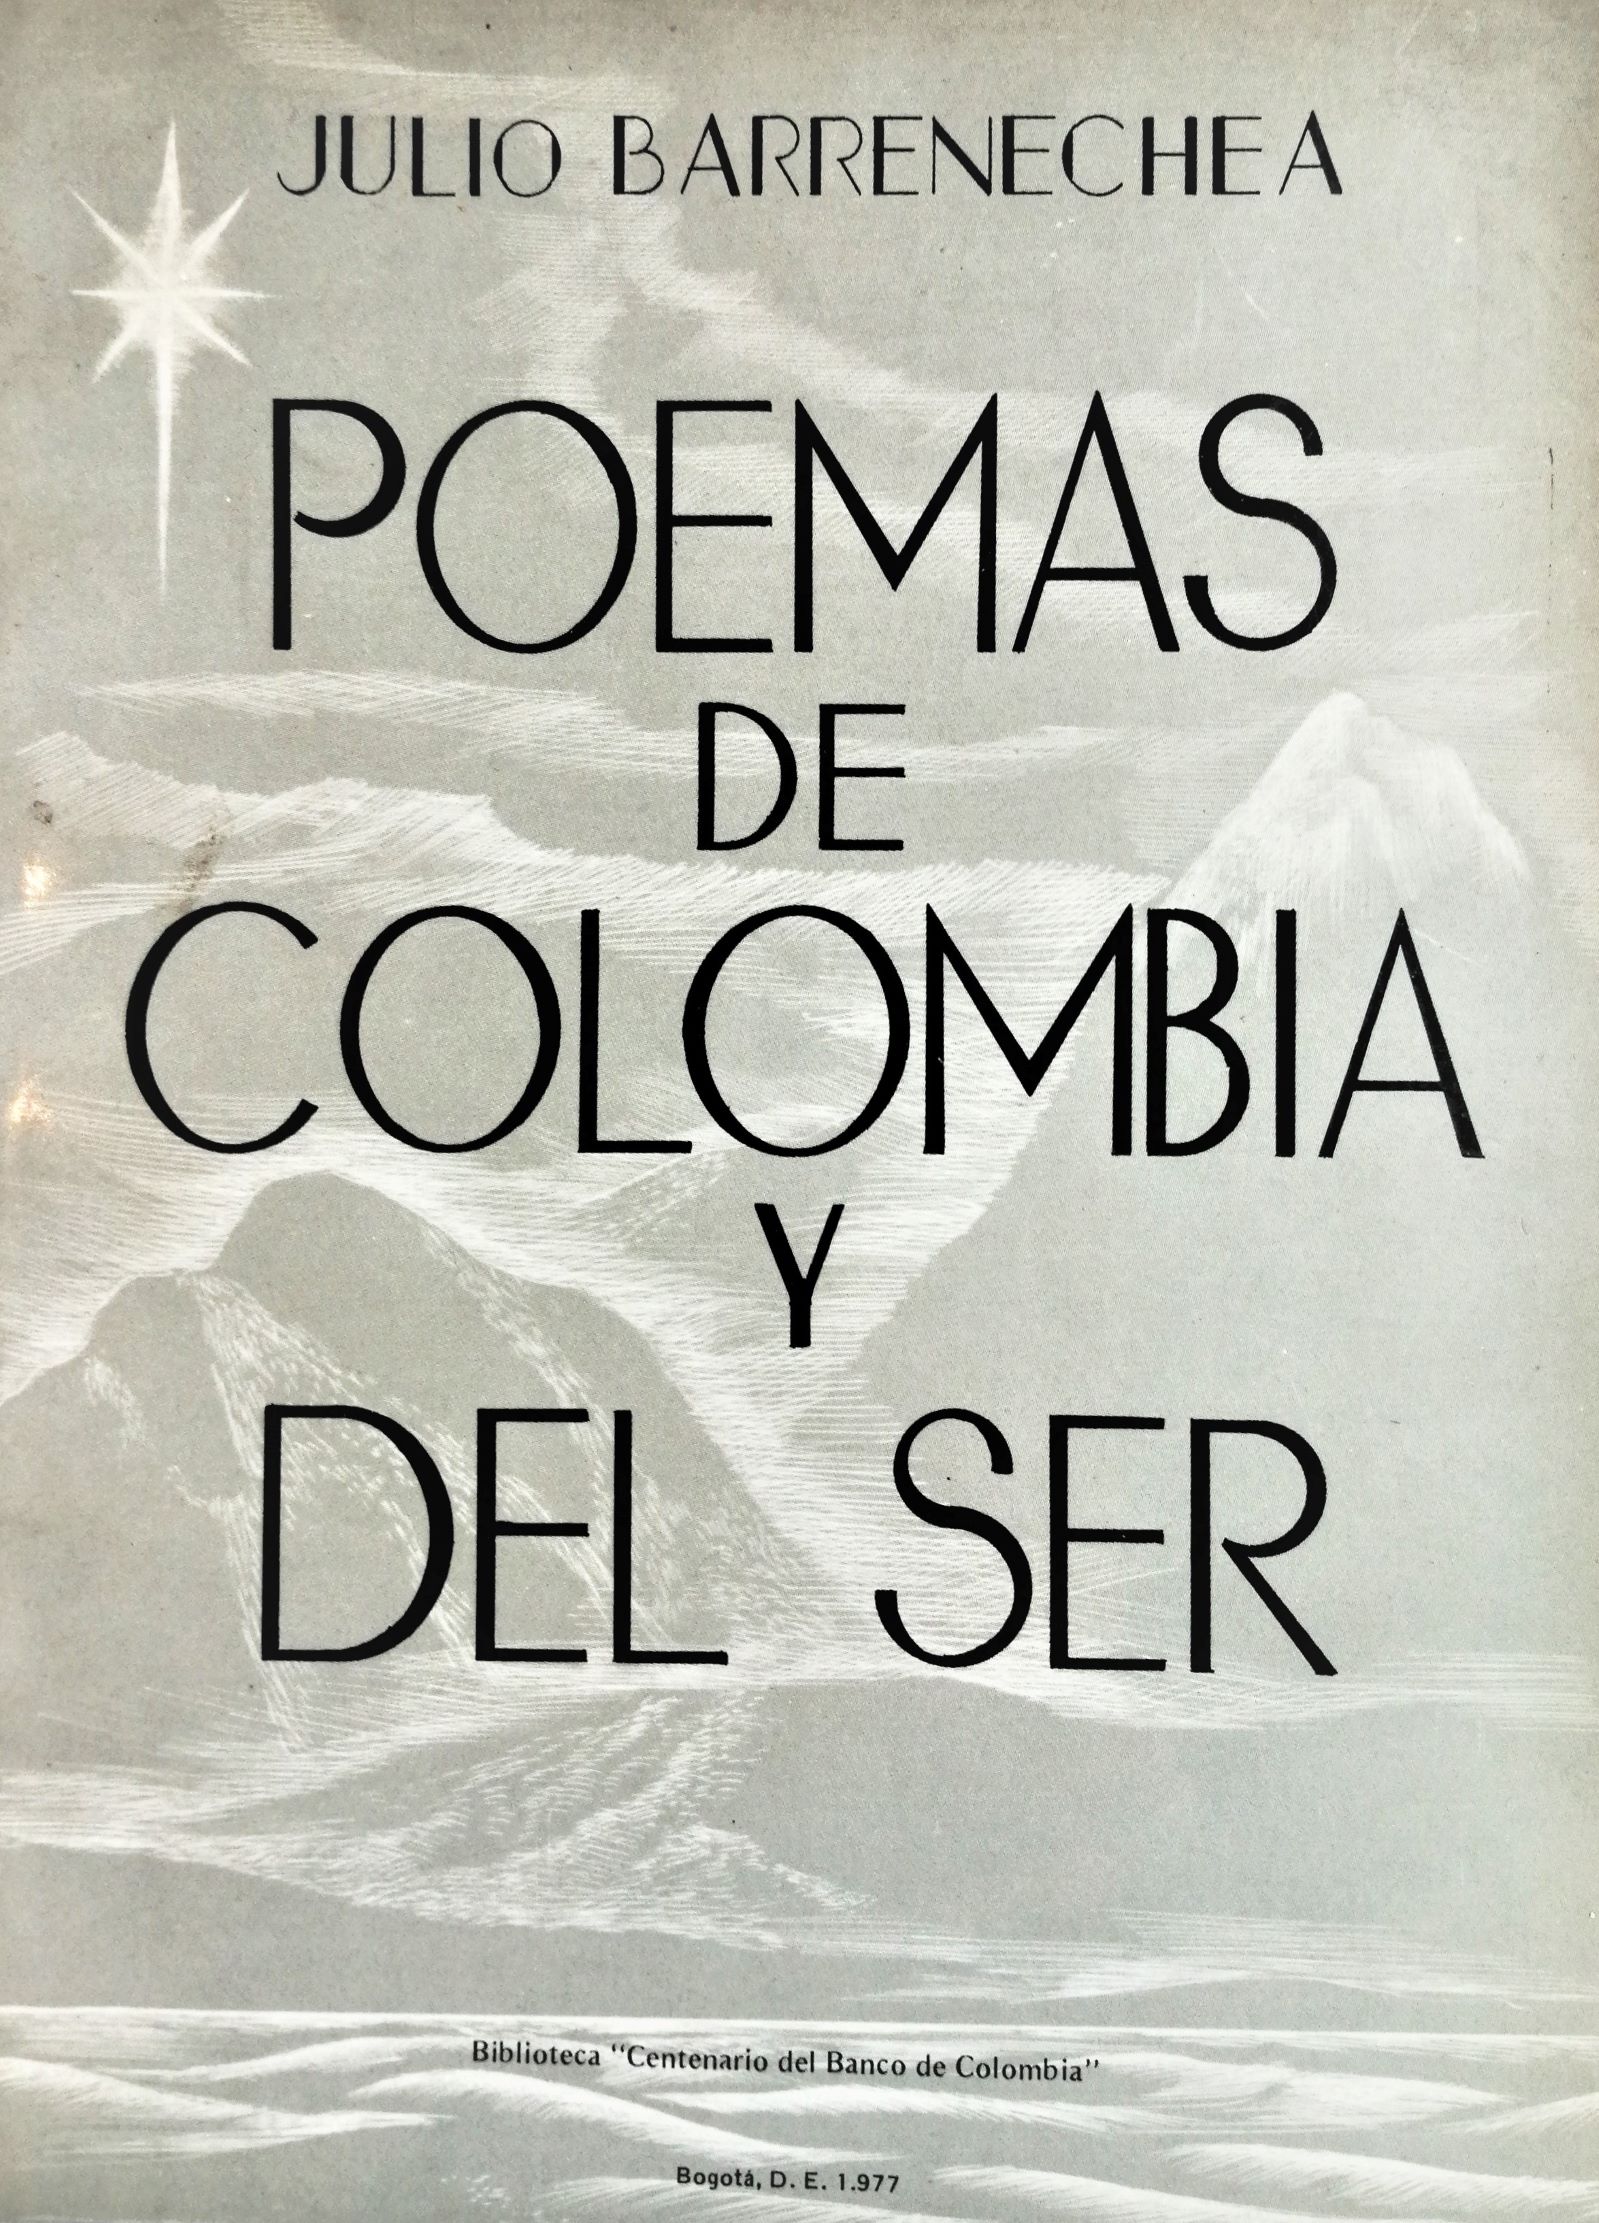 Julio Barrenechea - Poemas de Colombia y del ser